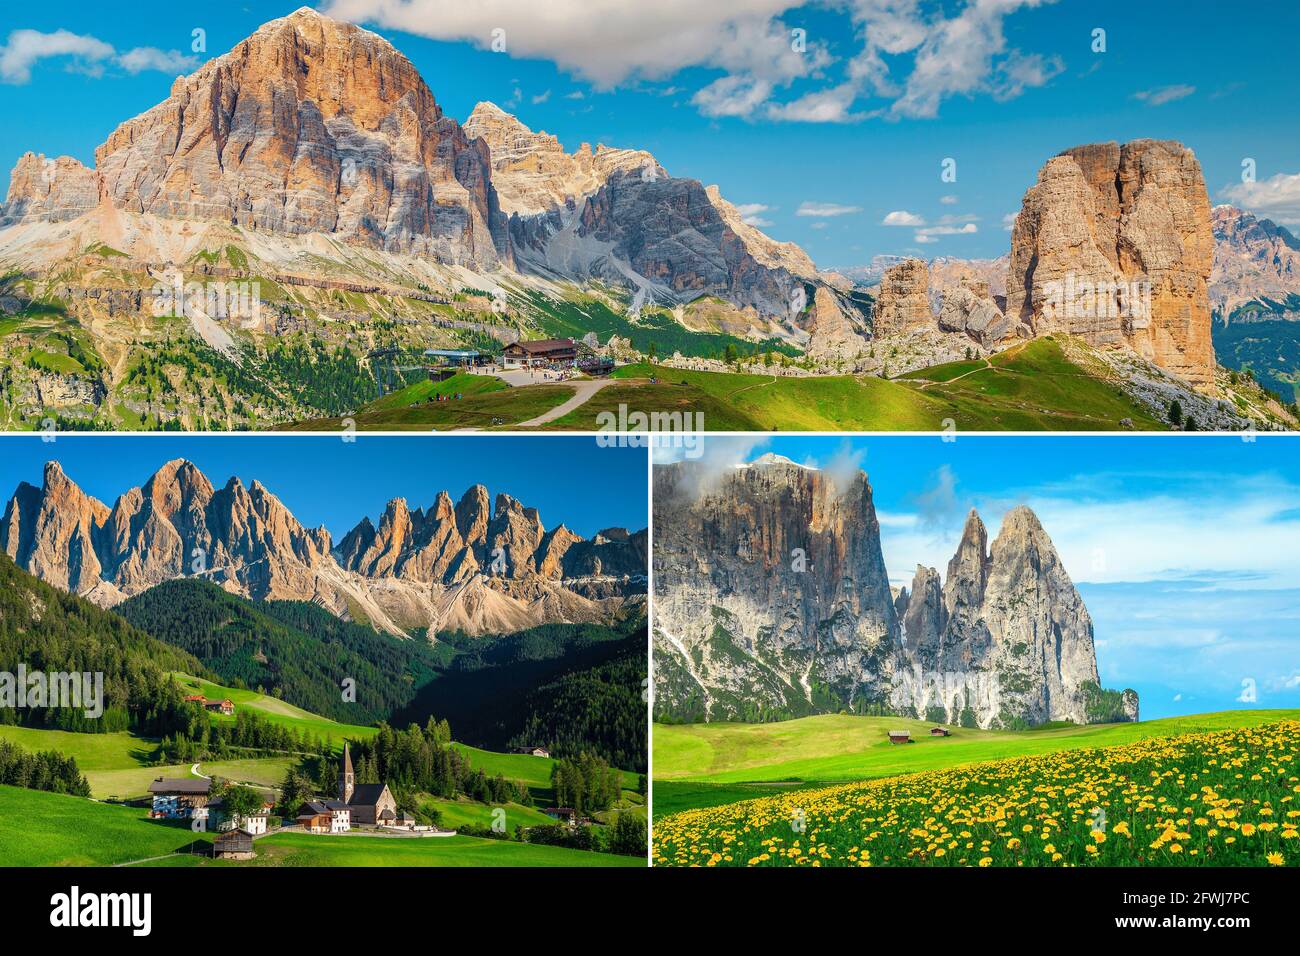 Spettacolare collage di viaggi Dolomiti e destinazioni escursionistiche. Formazione rocciosa delle cinque Torri, località Santa Maddalena e Alpe di Siusi, Italia, Europa Foto Stock